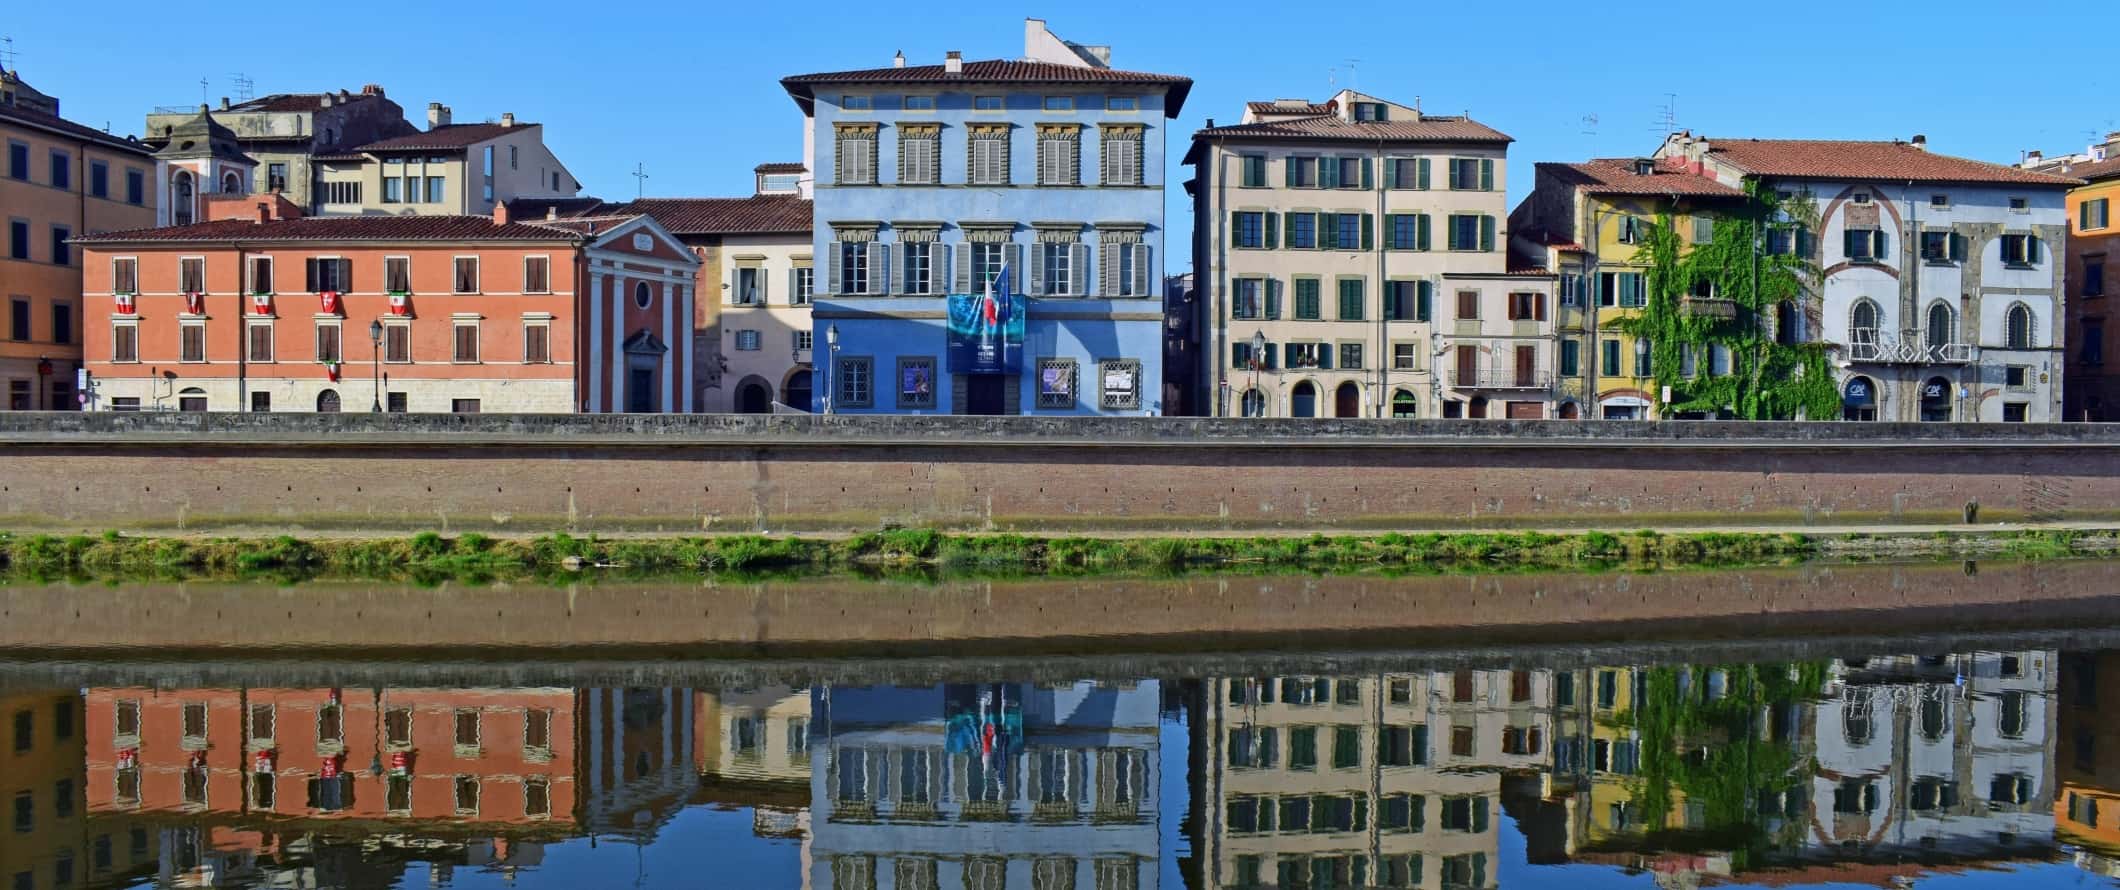 Edifícios históricos pintados em cores vivas, incluindo o centro de artes azul Palazzo Blu, alinham-se às margens do rio Arno, em Pisa, Itália.